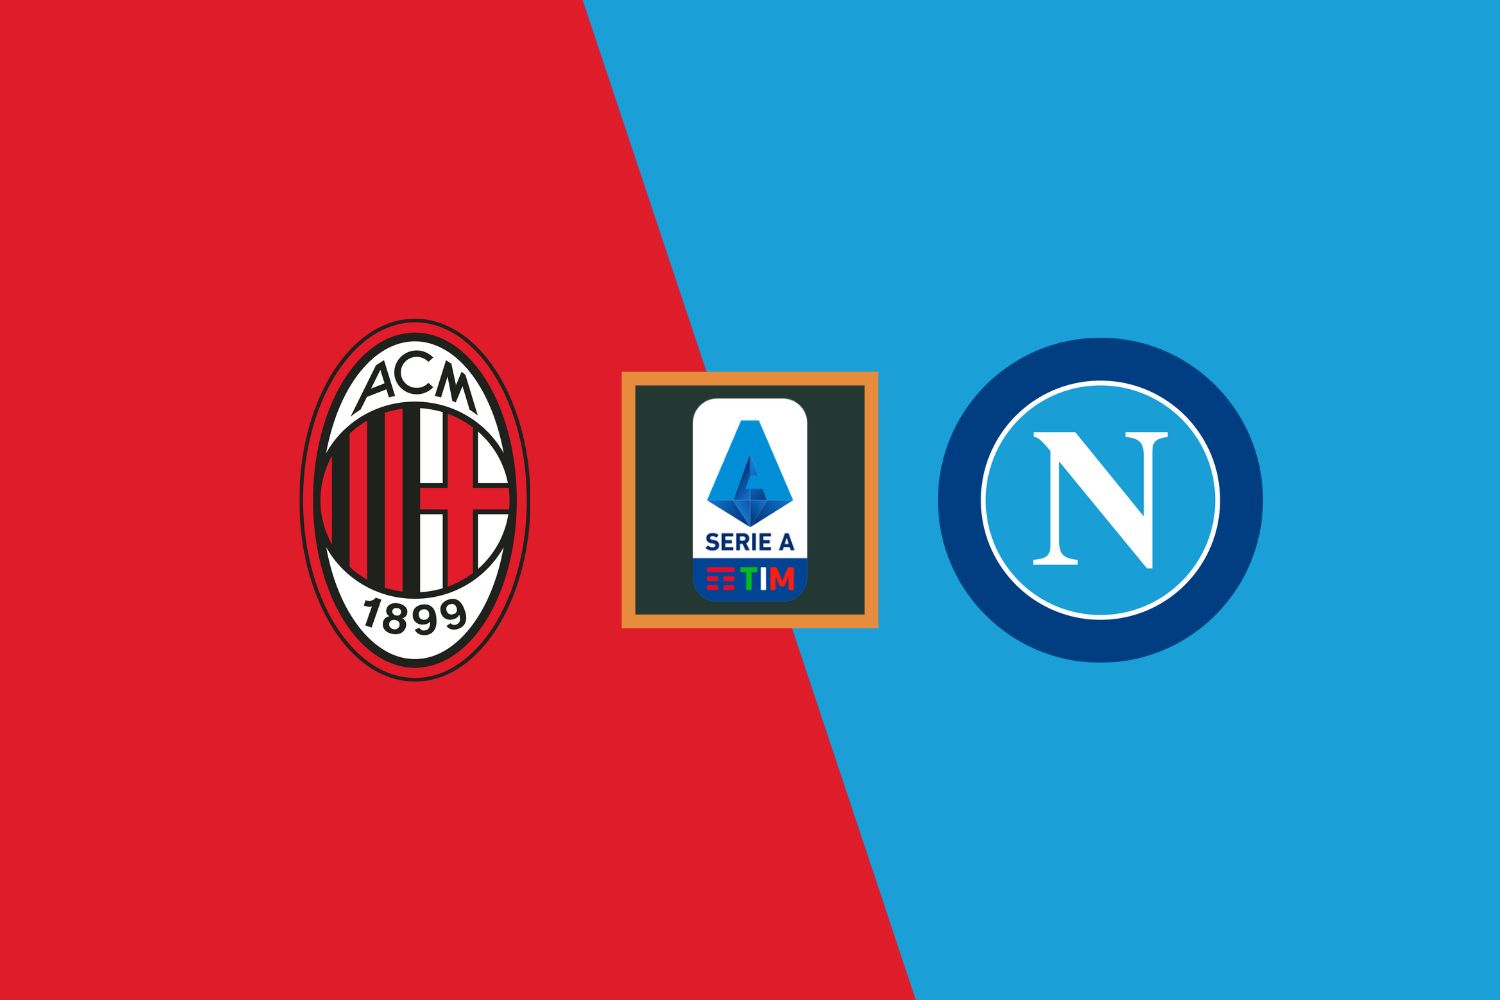 AC Milan vs Napoli preview & prediction